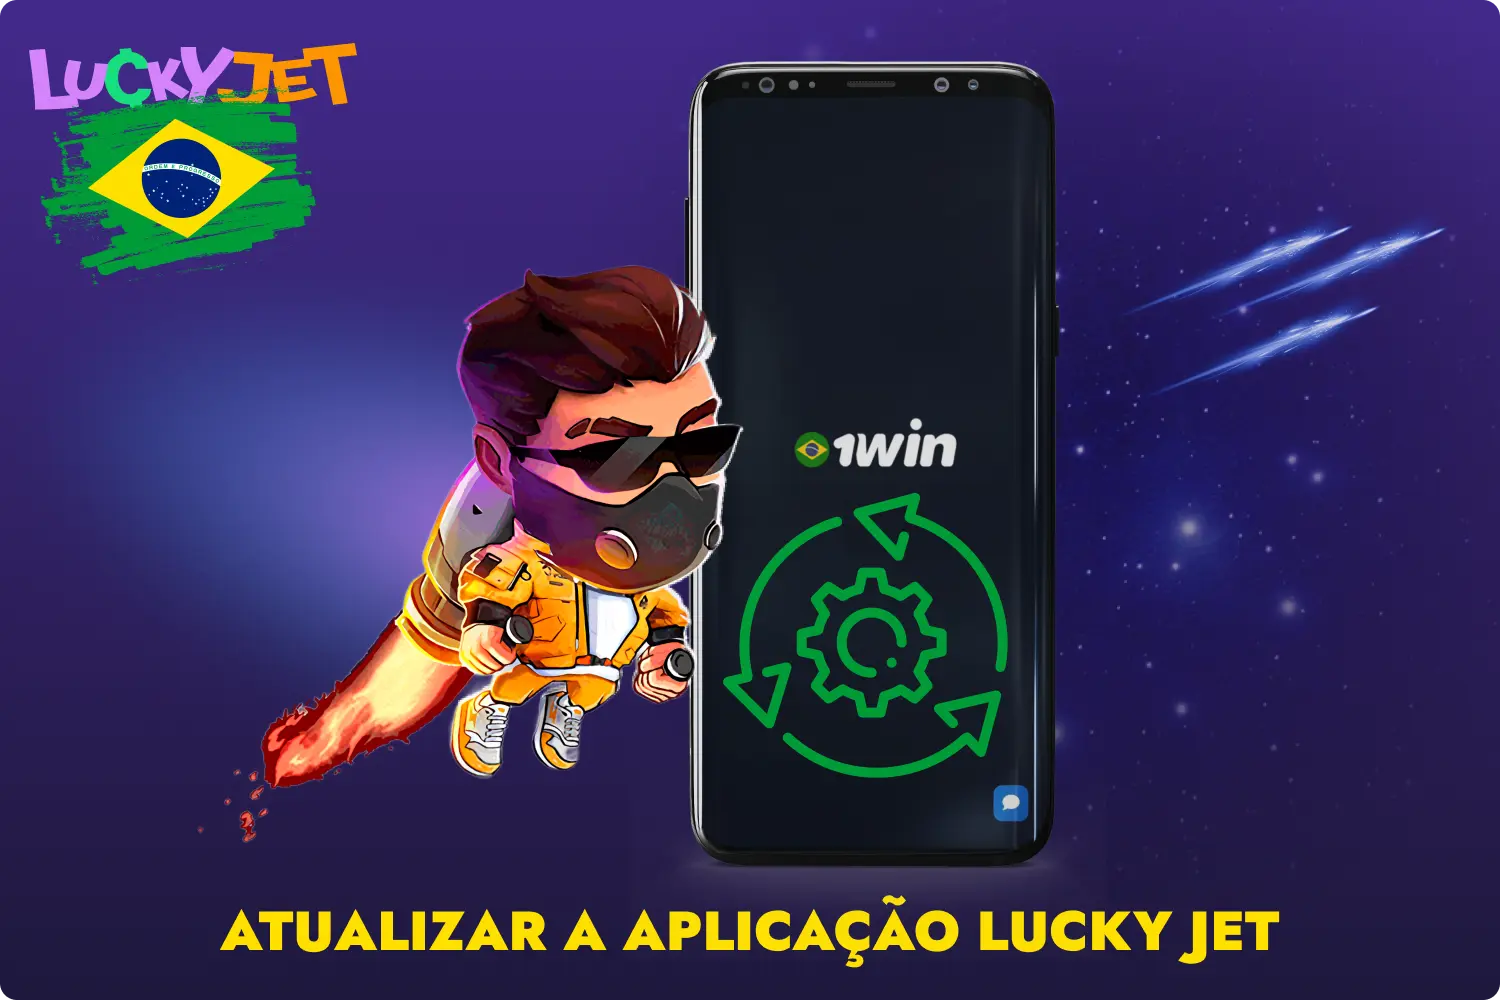 Os brasileiros não precisam de atualizar manualmente uma aplicação 1win Lucky Jet previamente descarregada, uma vez que, de cada vez que a lançam, obtêm a funcionalidade mais recente do programa